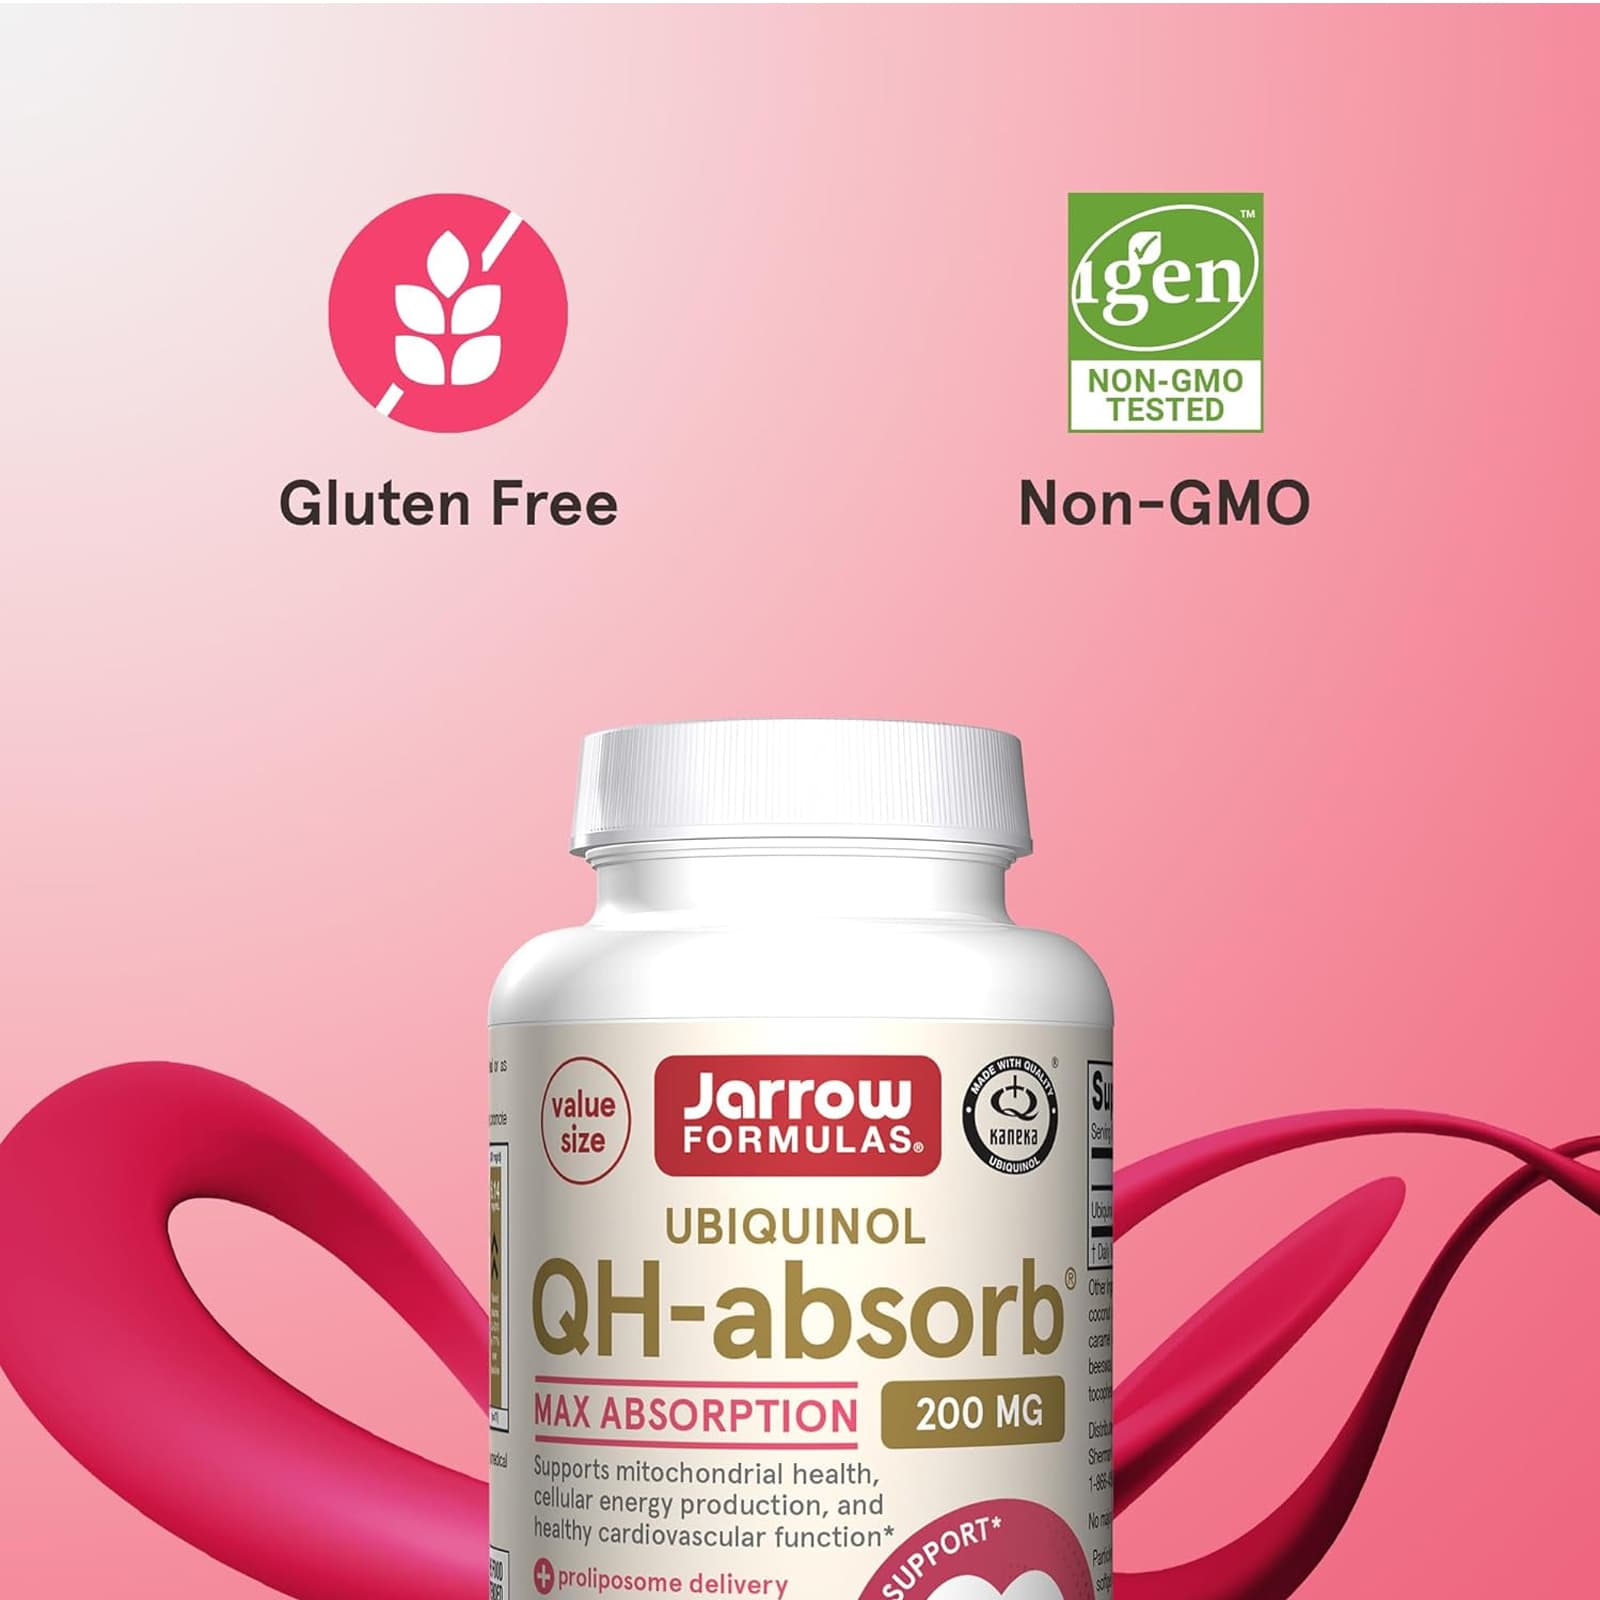 Jarrow Formulas Ubiquinol QH-Absorb 200 mg 30 Softgels